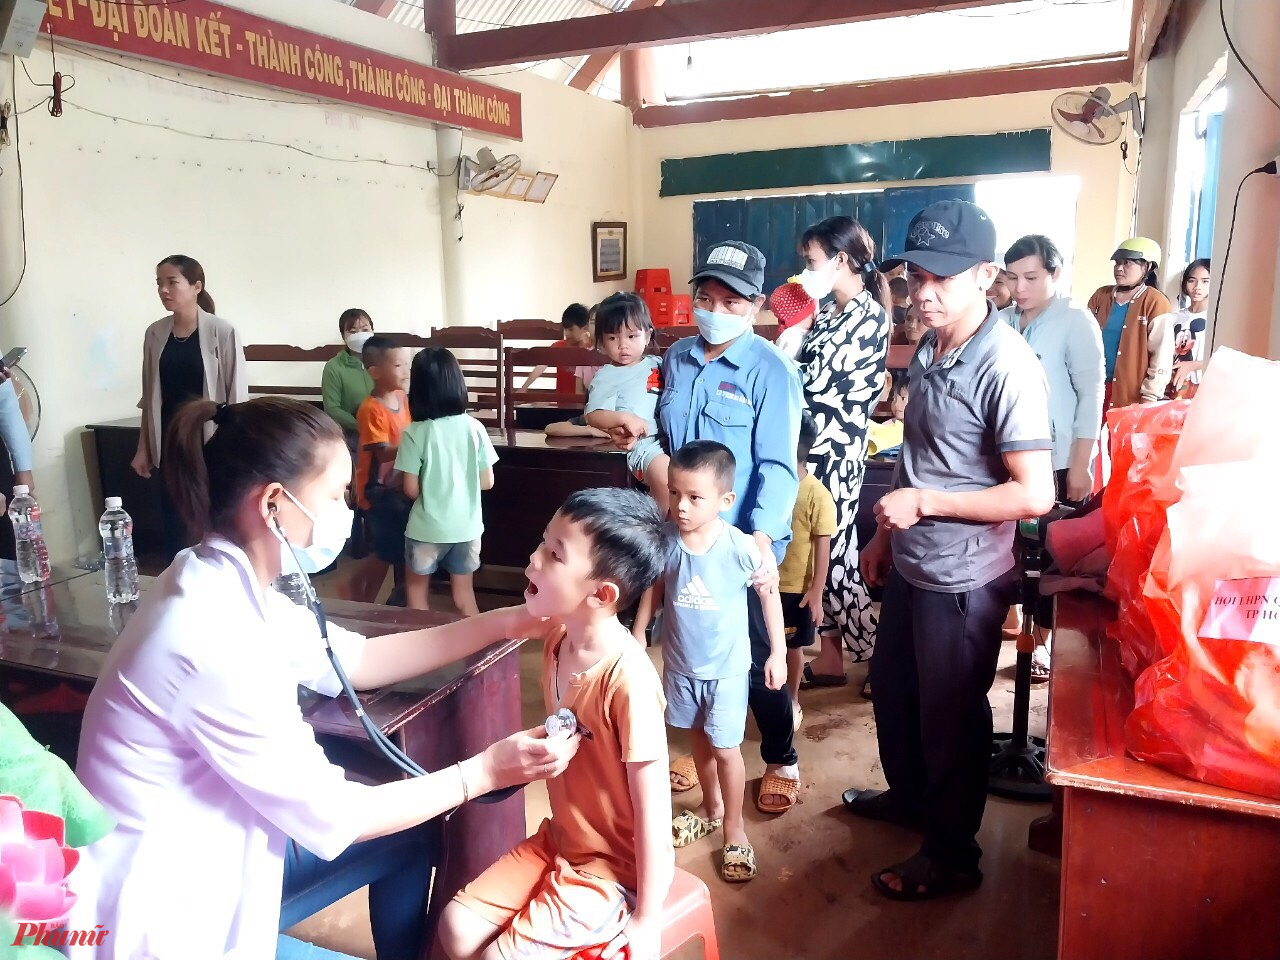 Đoàn y bác sĩ đến khám bệnh cho trẻ em tại vùng biên 